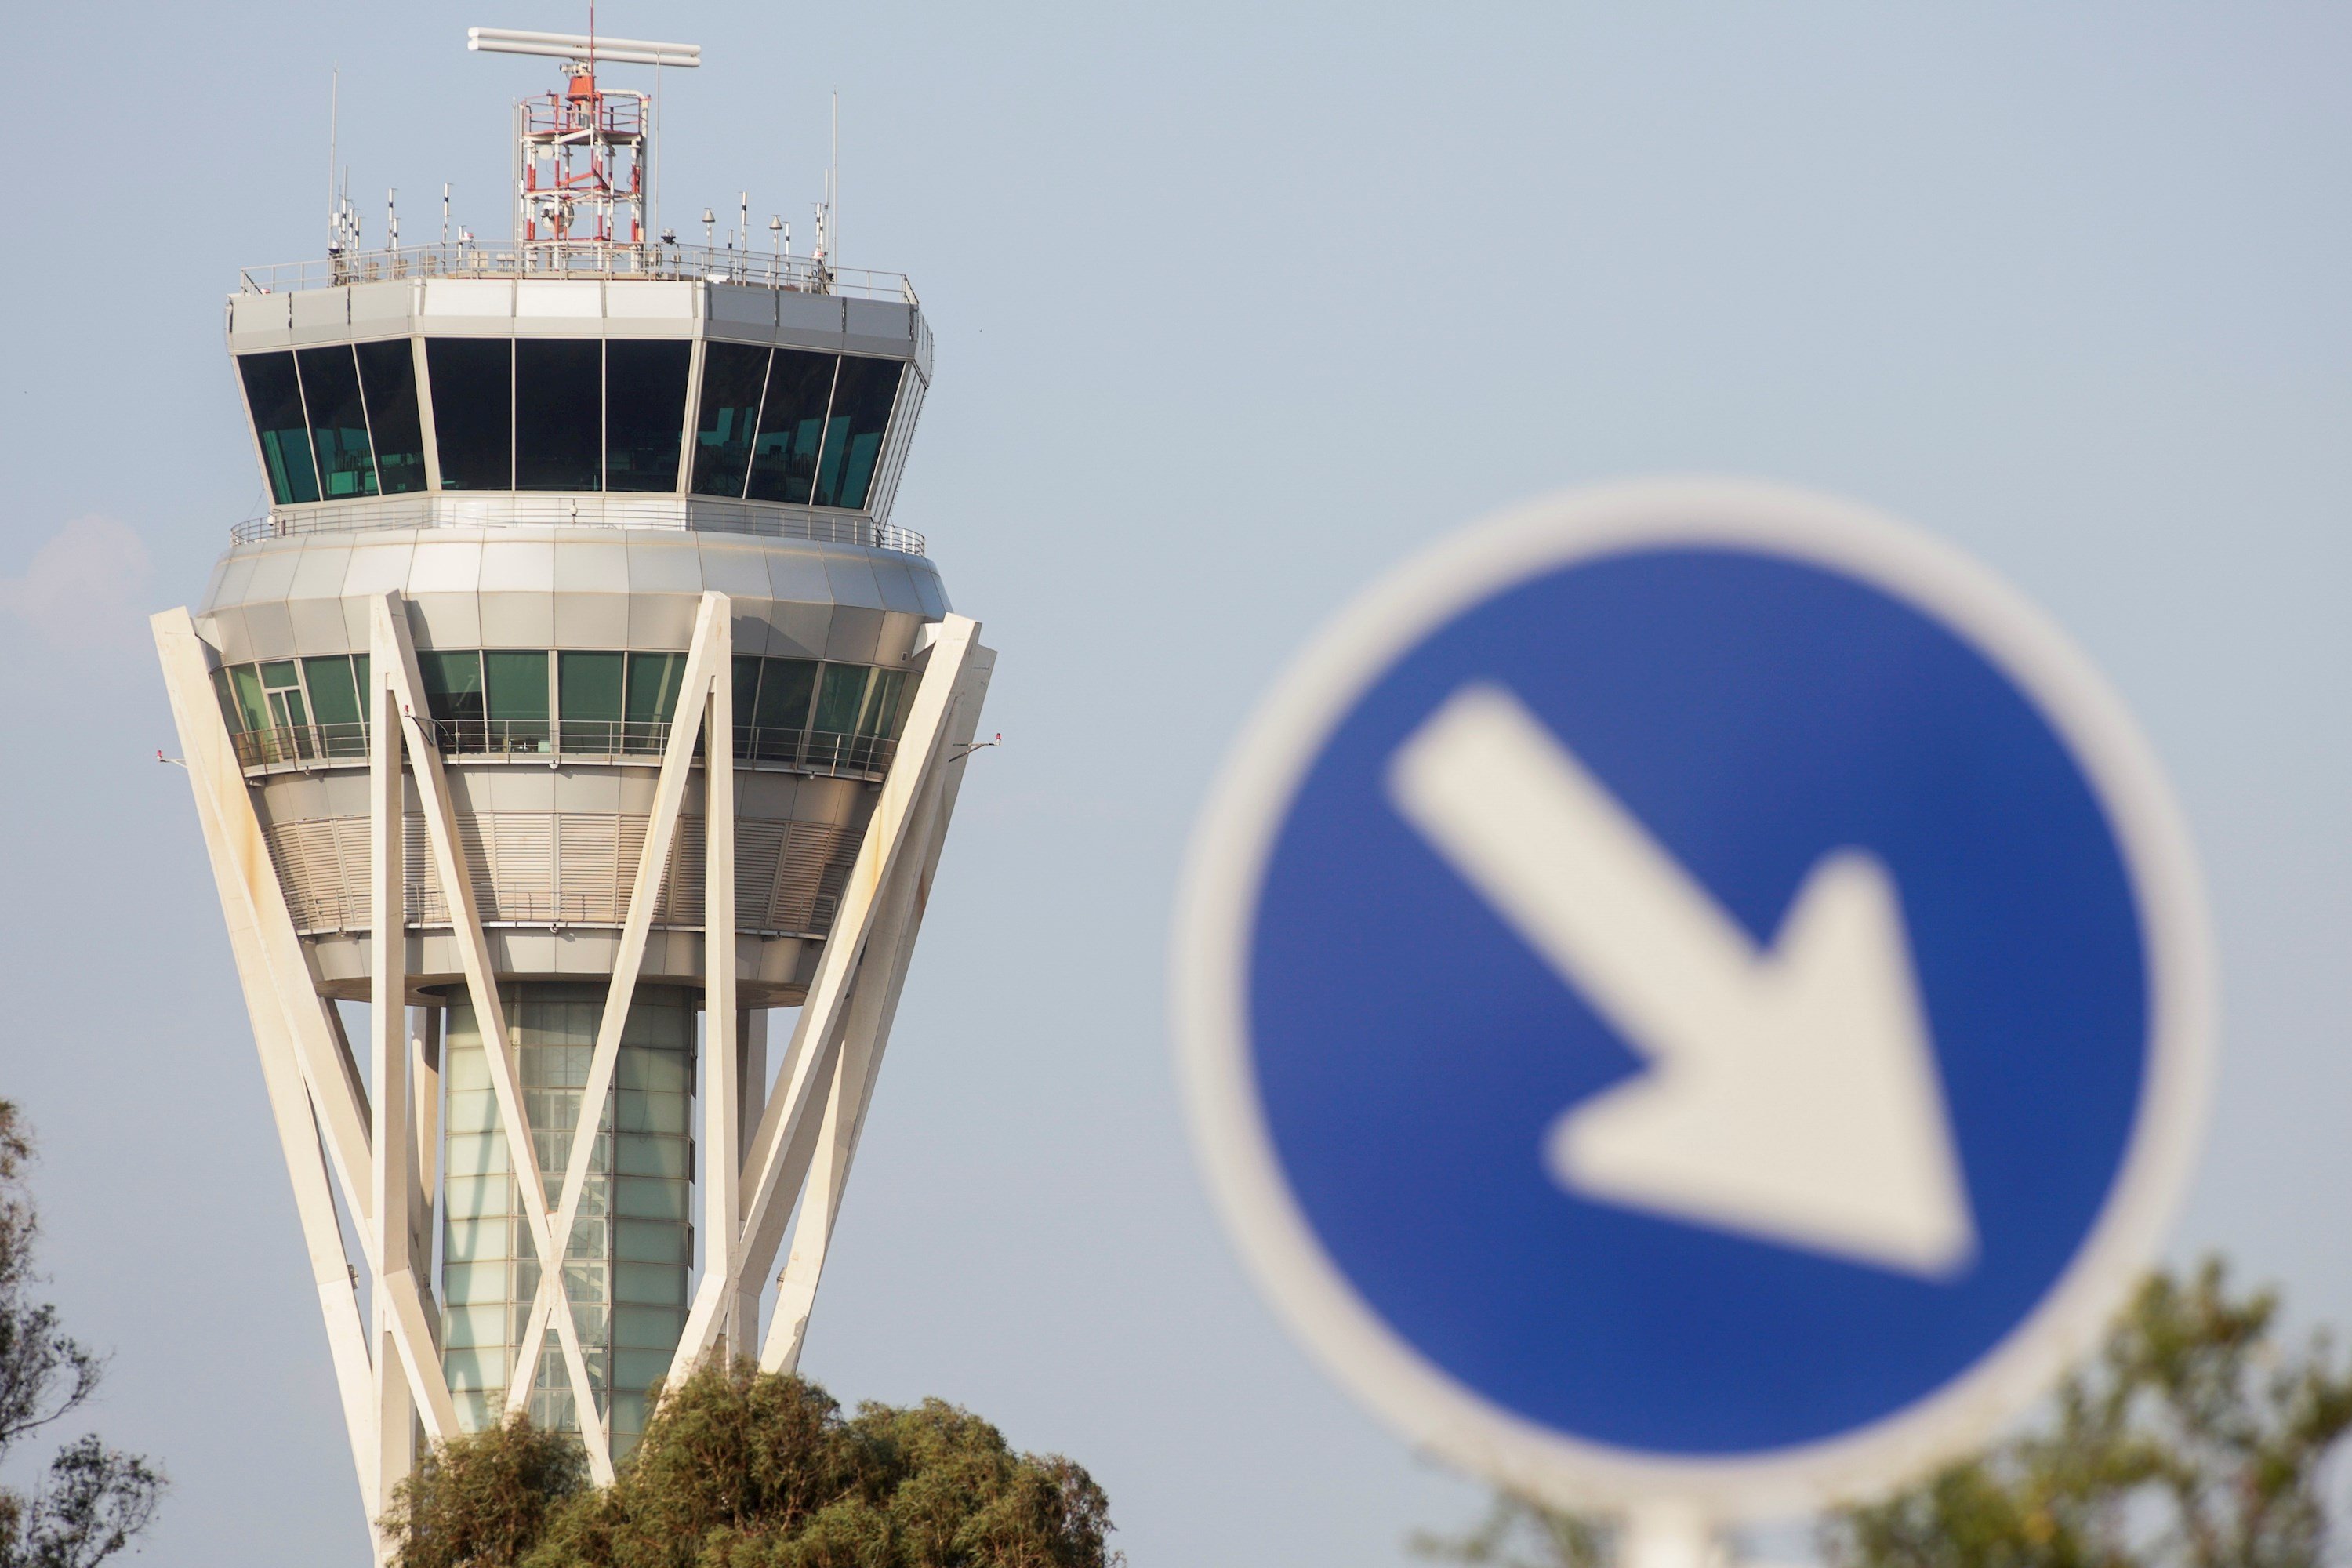 Aena preveia un increment del PIB català d’un 2,24% si s’ampliés l’aeroport